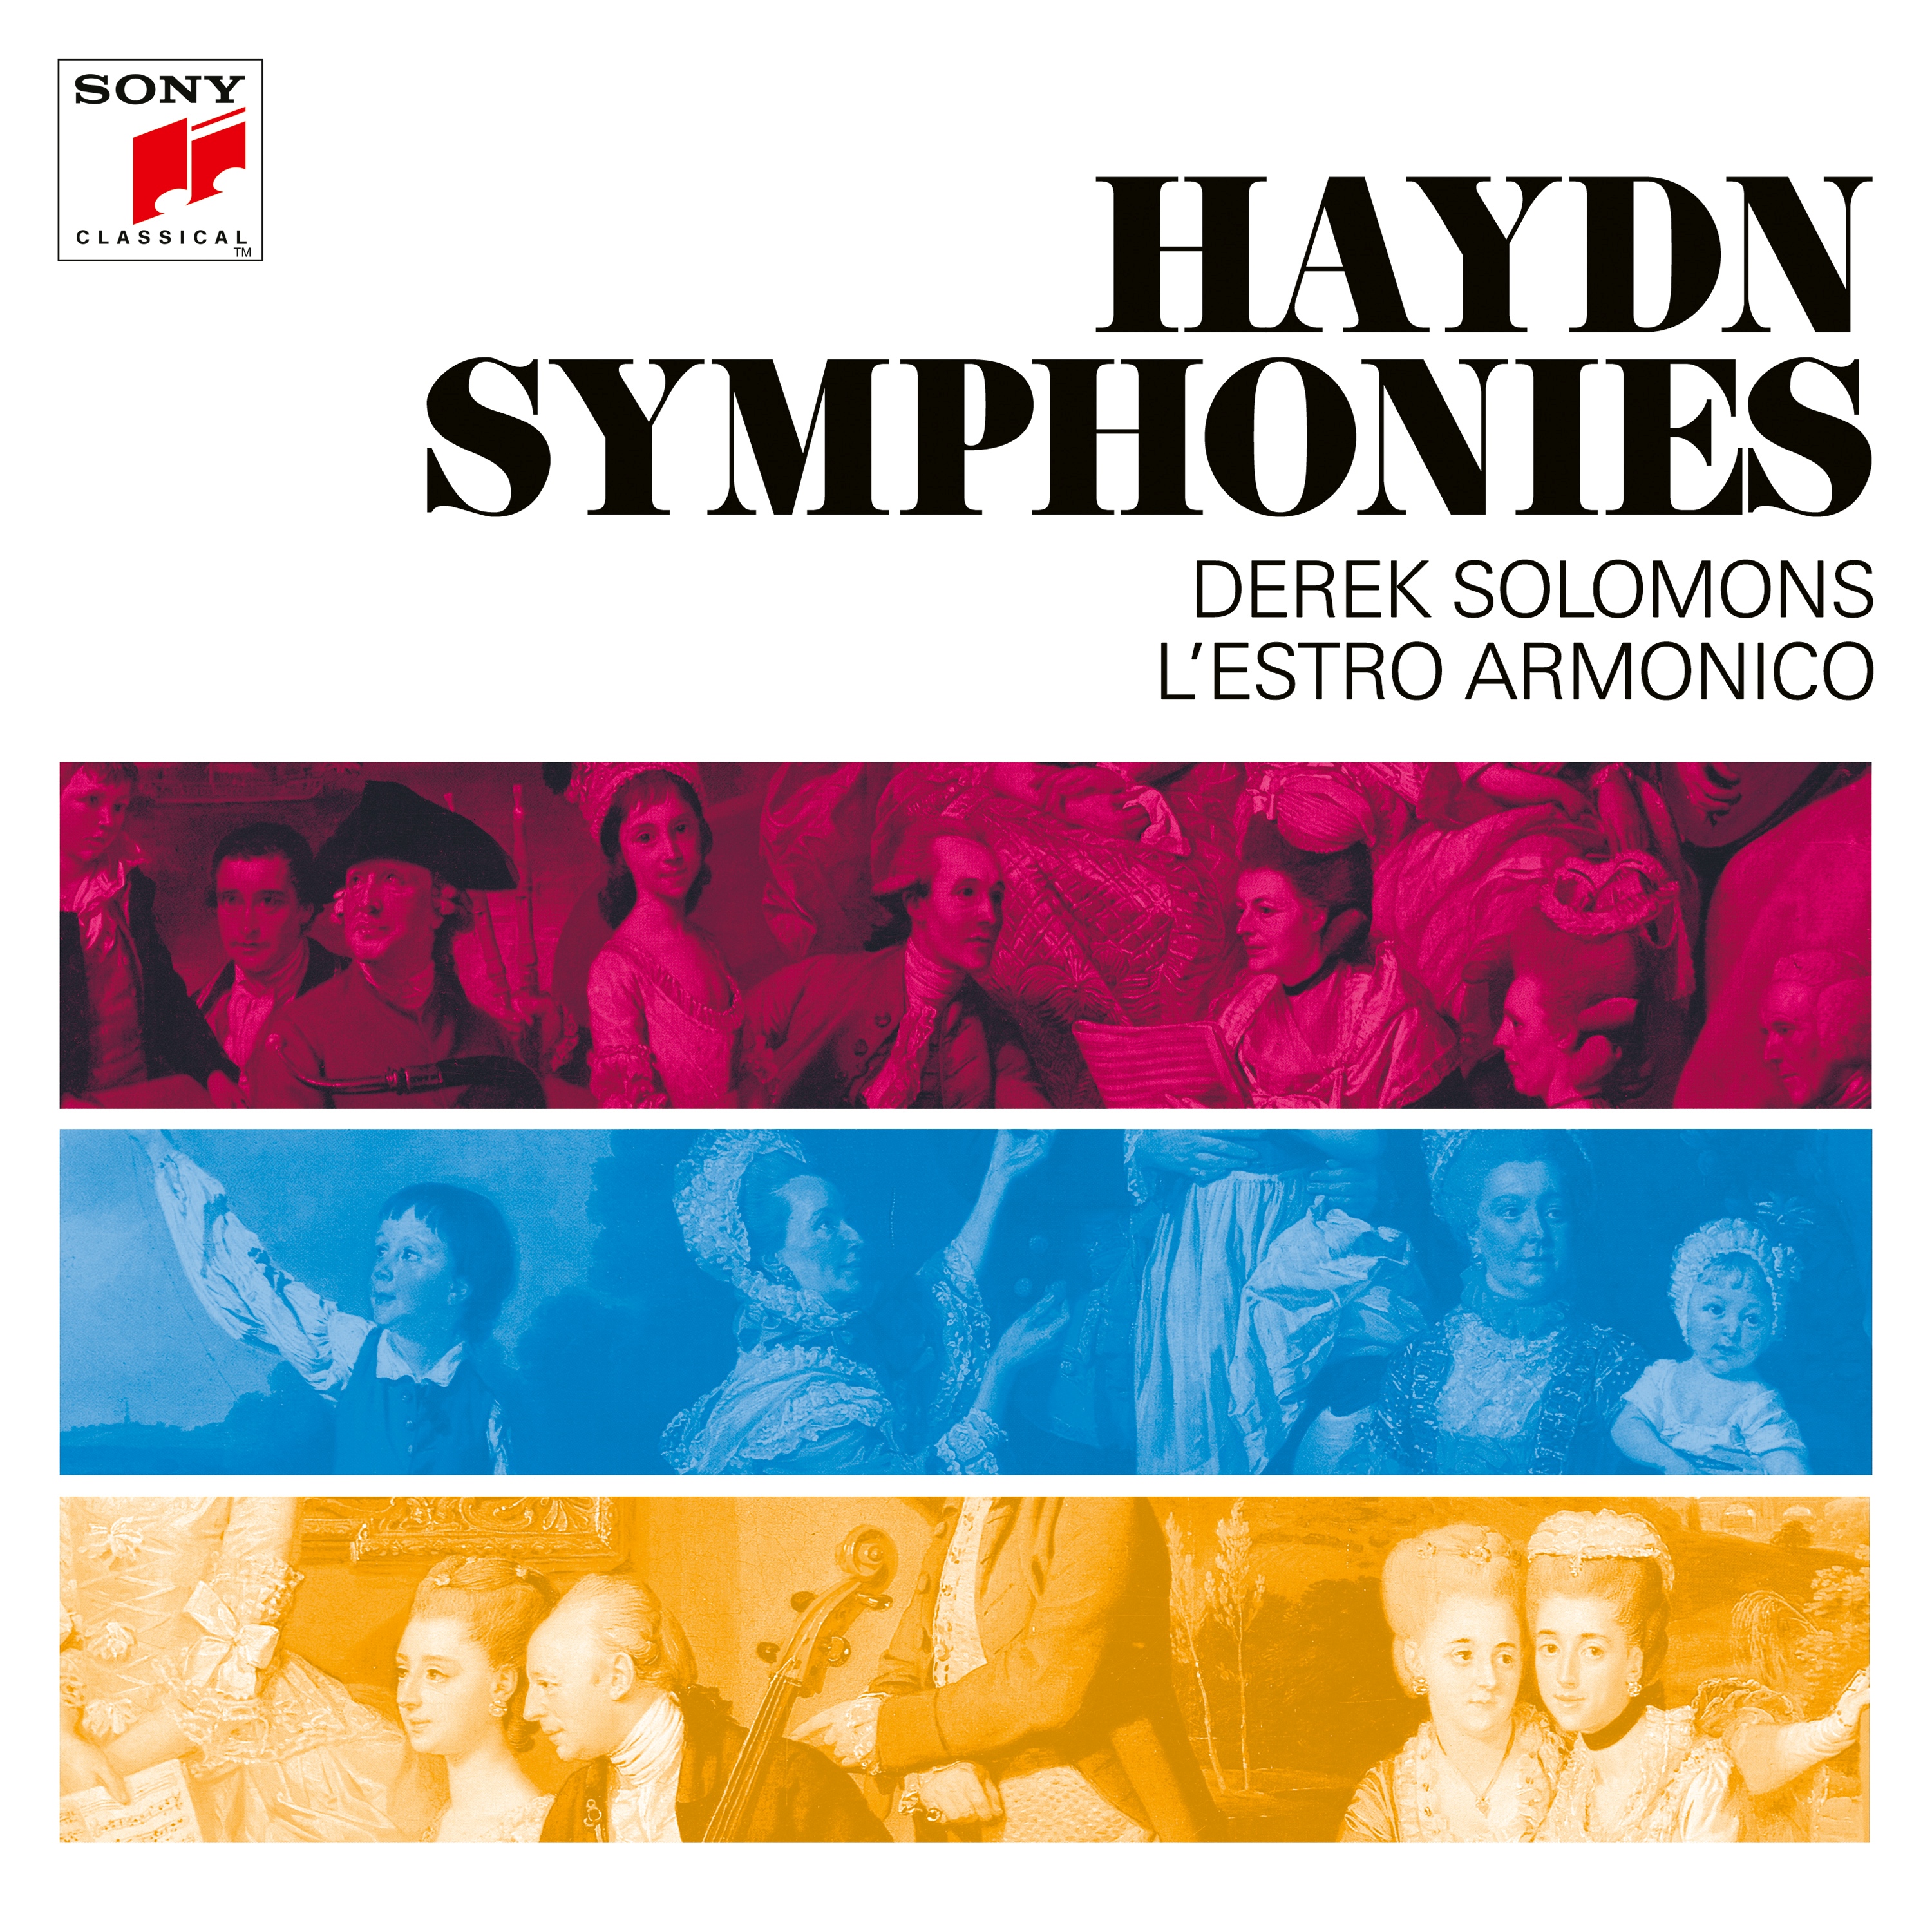 Derek Solomons - Haydn Symphonies